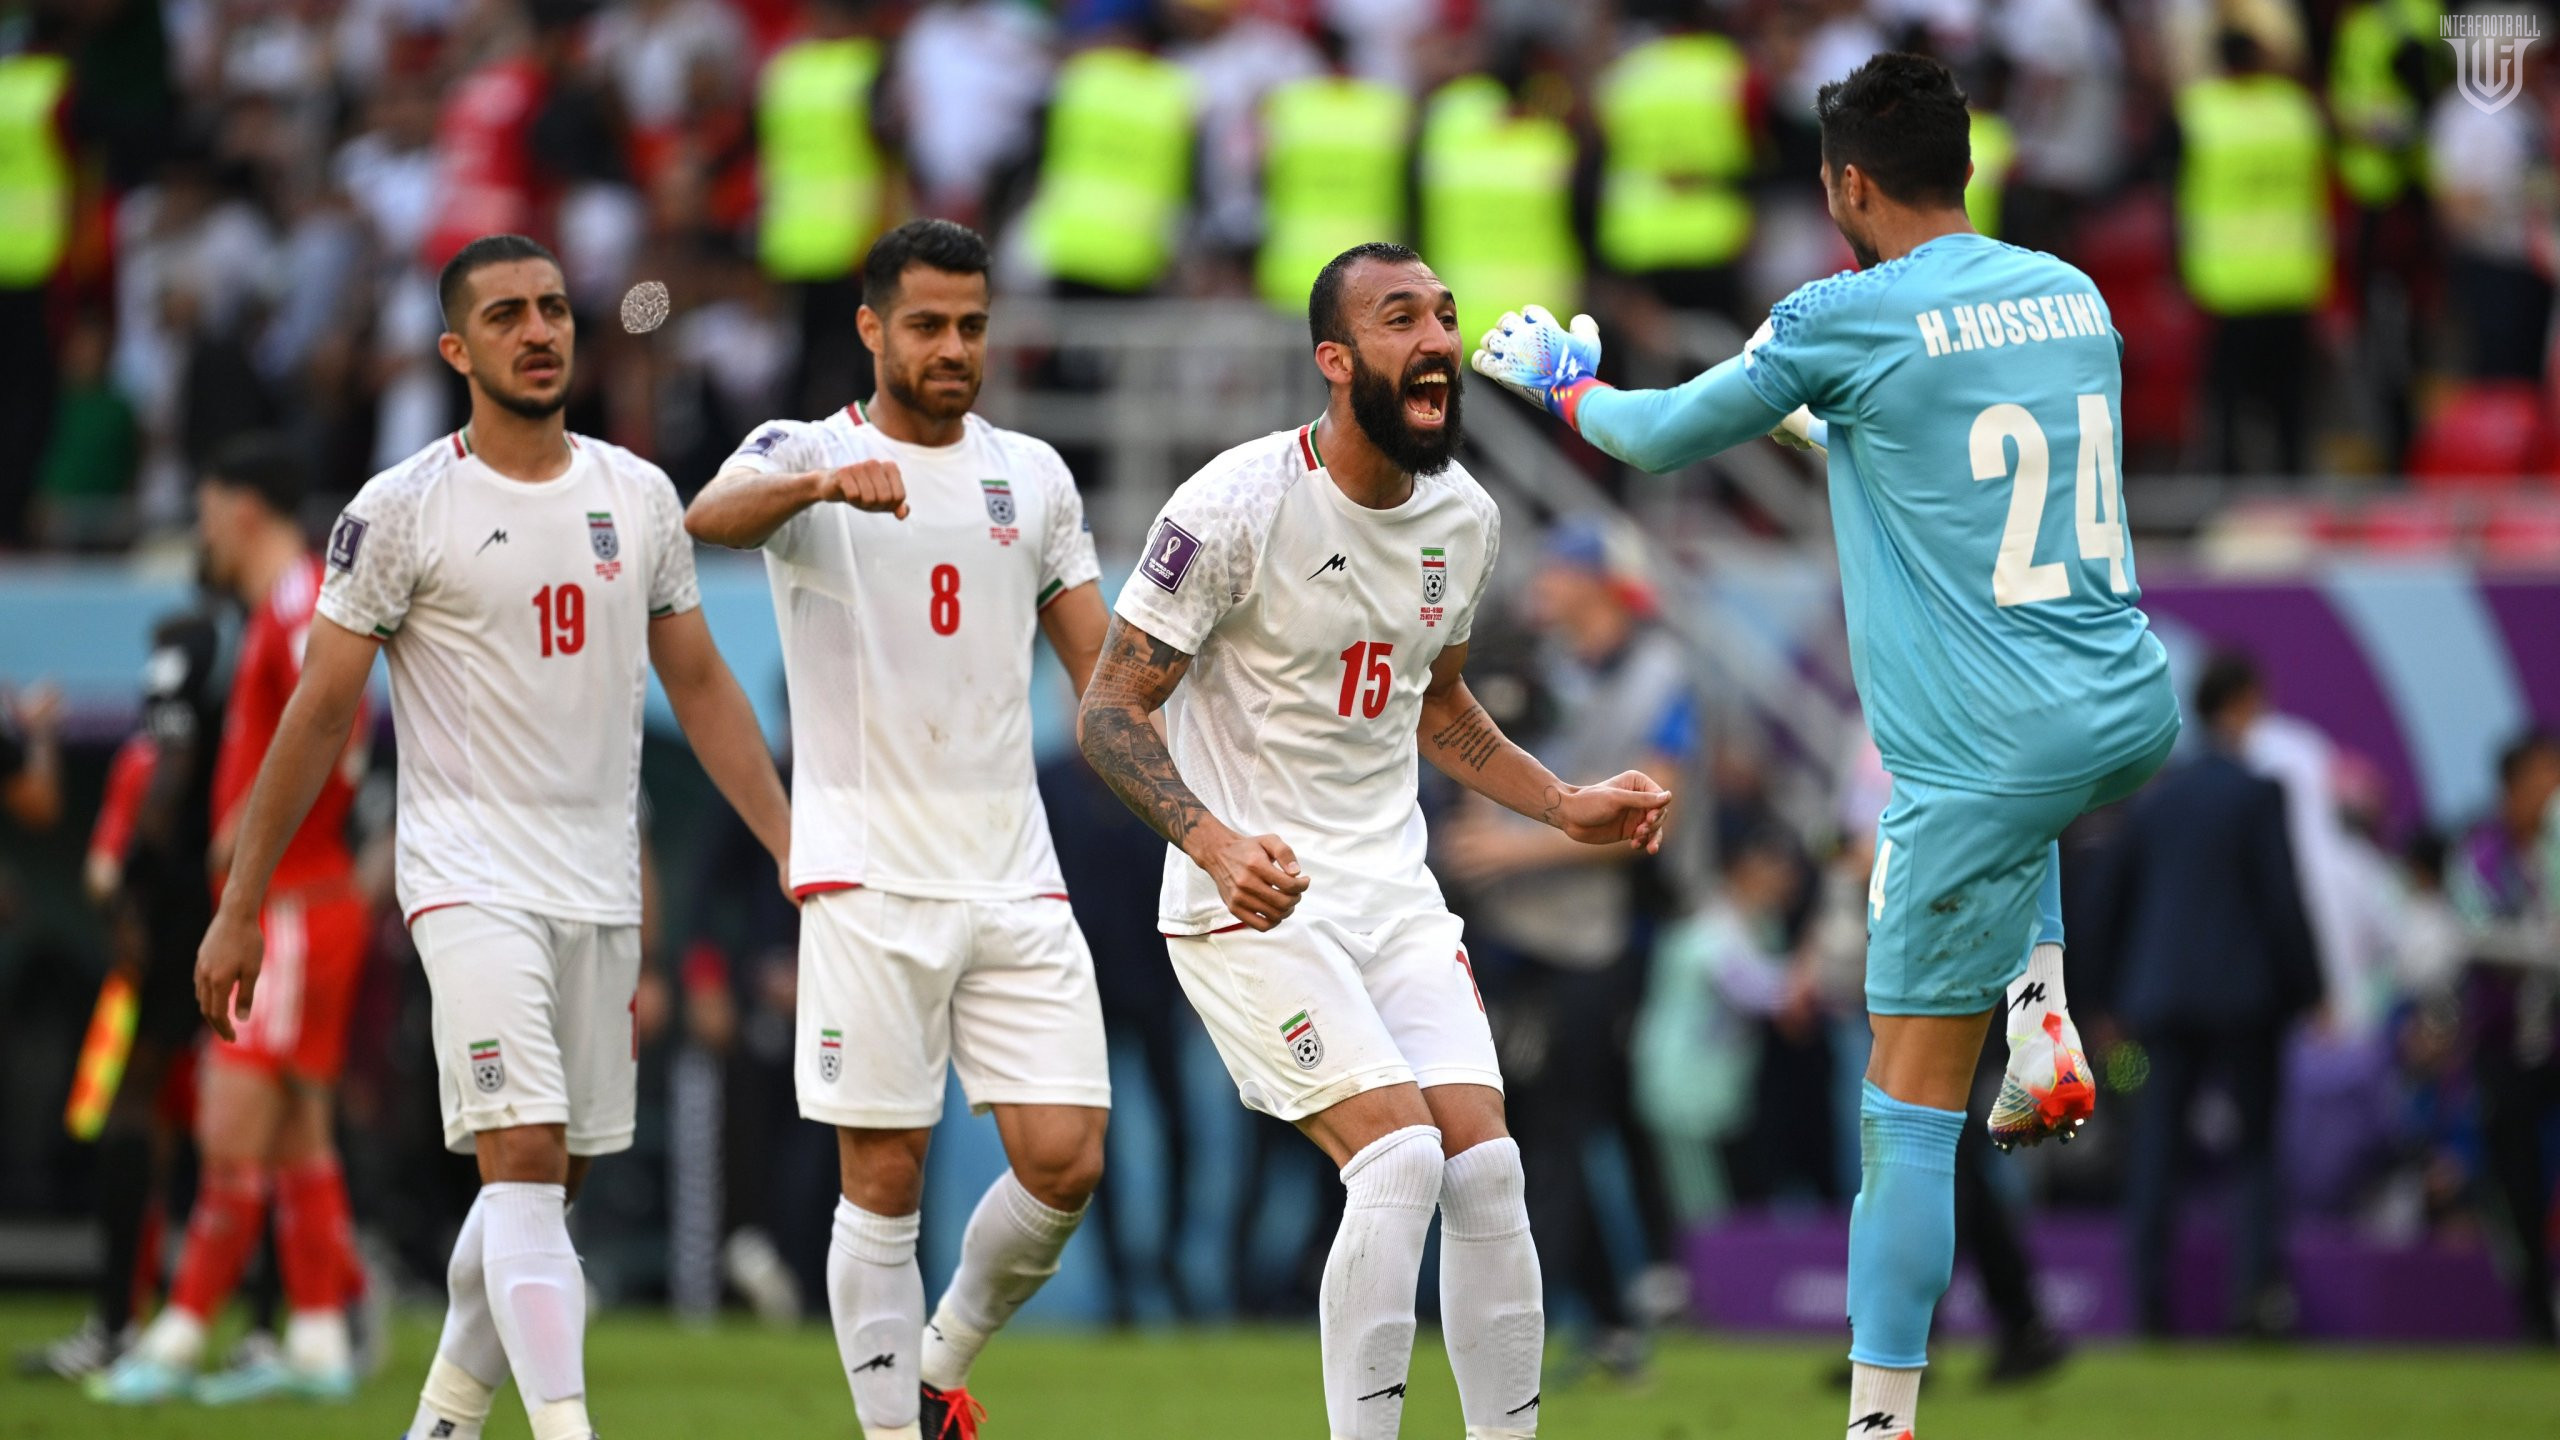 ԱԱ-2022. Իրանը դրամատիկ խաղում հաղթեց Ուելսին🎥